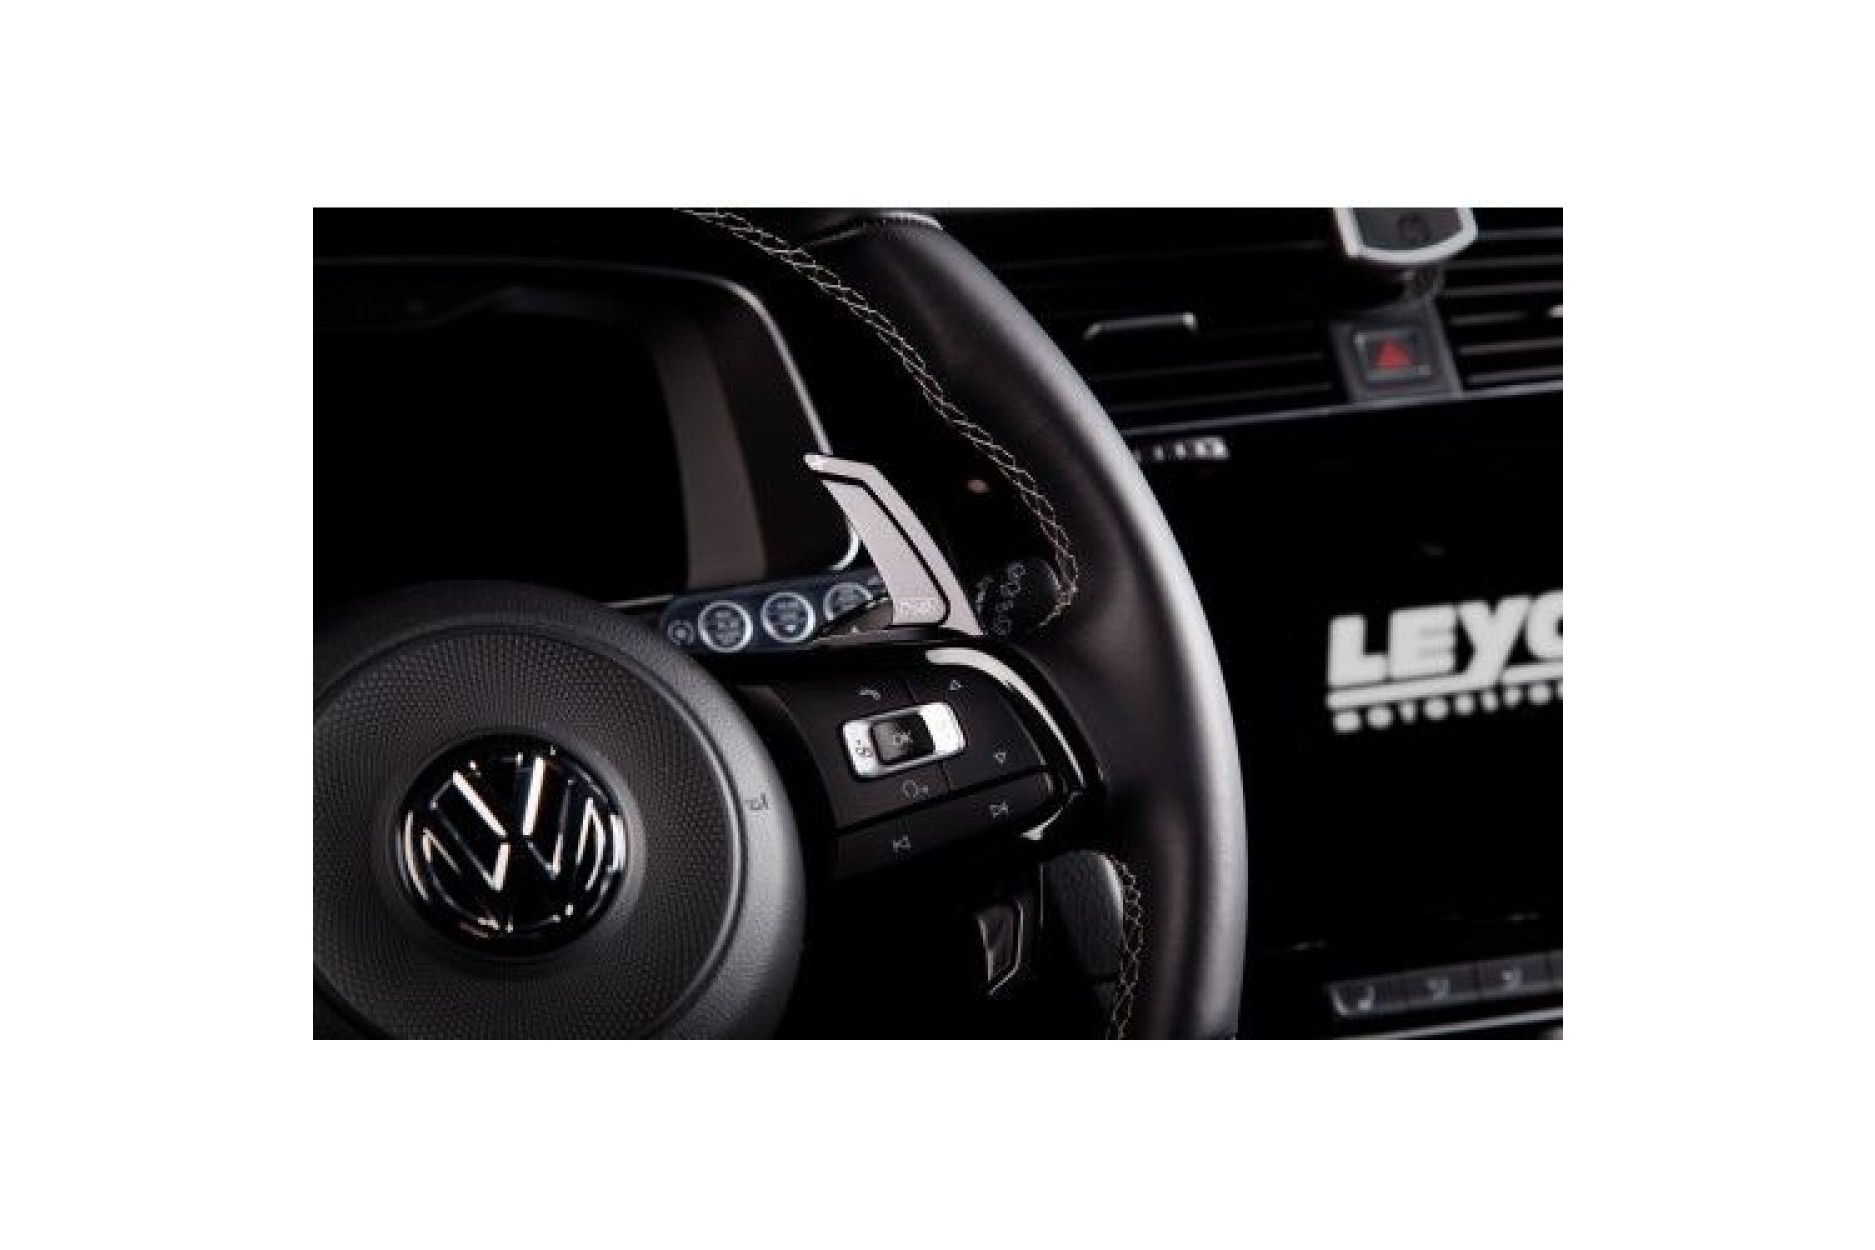 Leyo Aluminium Schaltwippen für VW Golf 7 GTI/R - online kaufen bei CFD